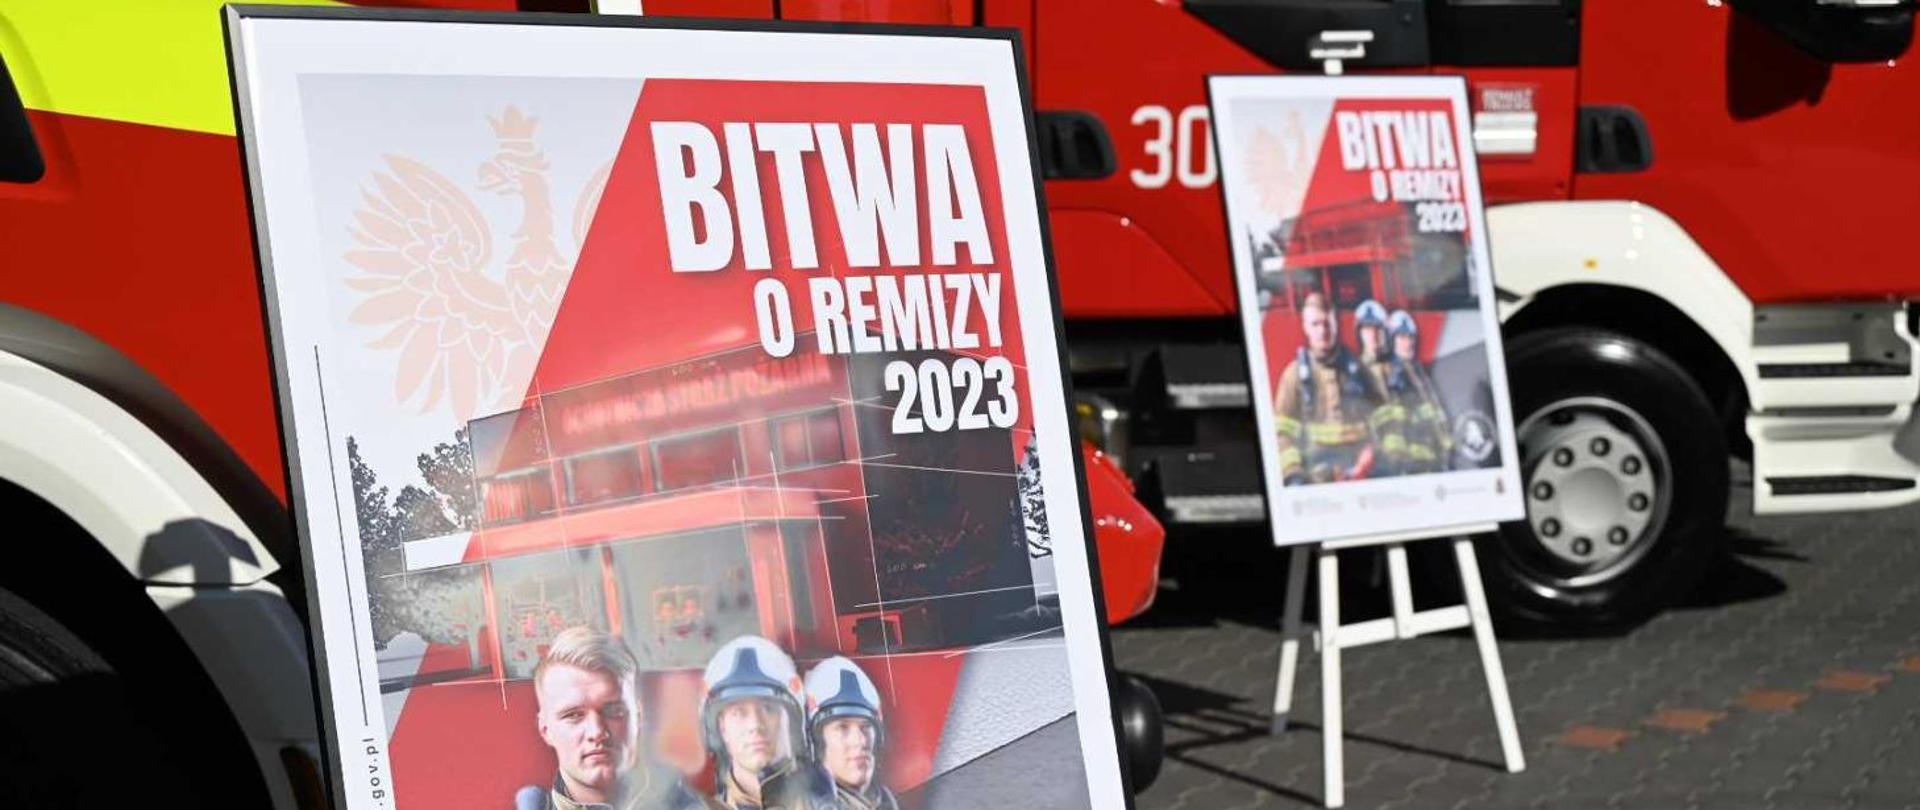 Plakat akcji „Bitwa o remizy” – rząd sfinansuje termomodernizację i doposażenie remiz dla gmin o najwyższej frekwencji wyborczej.